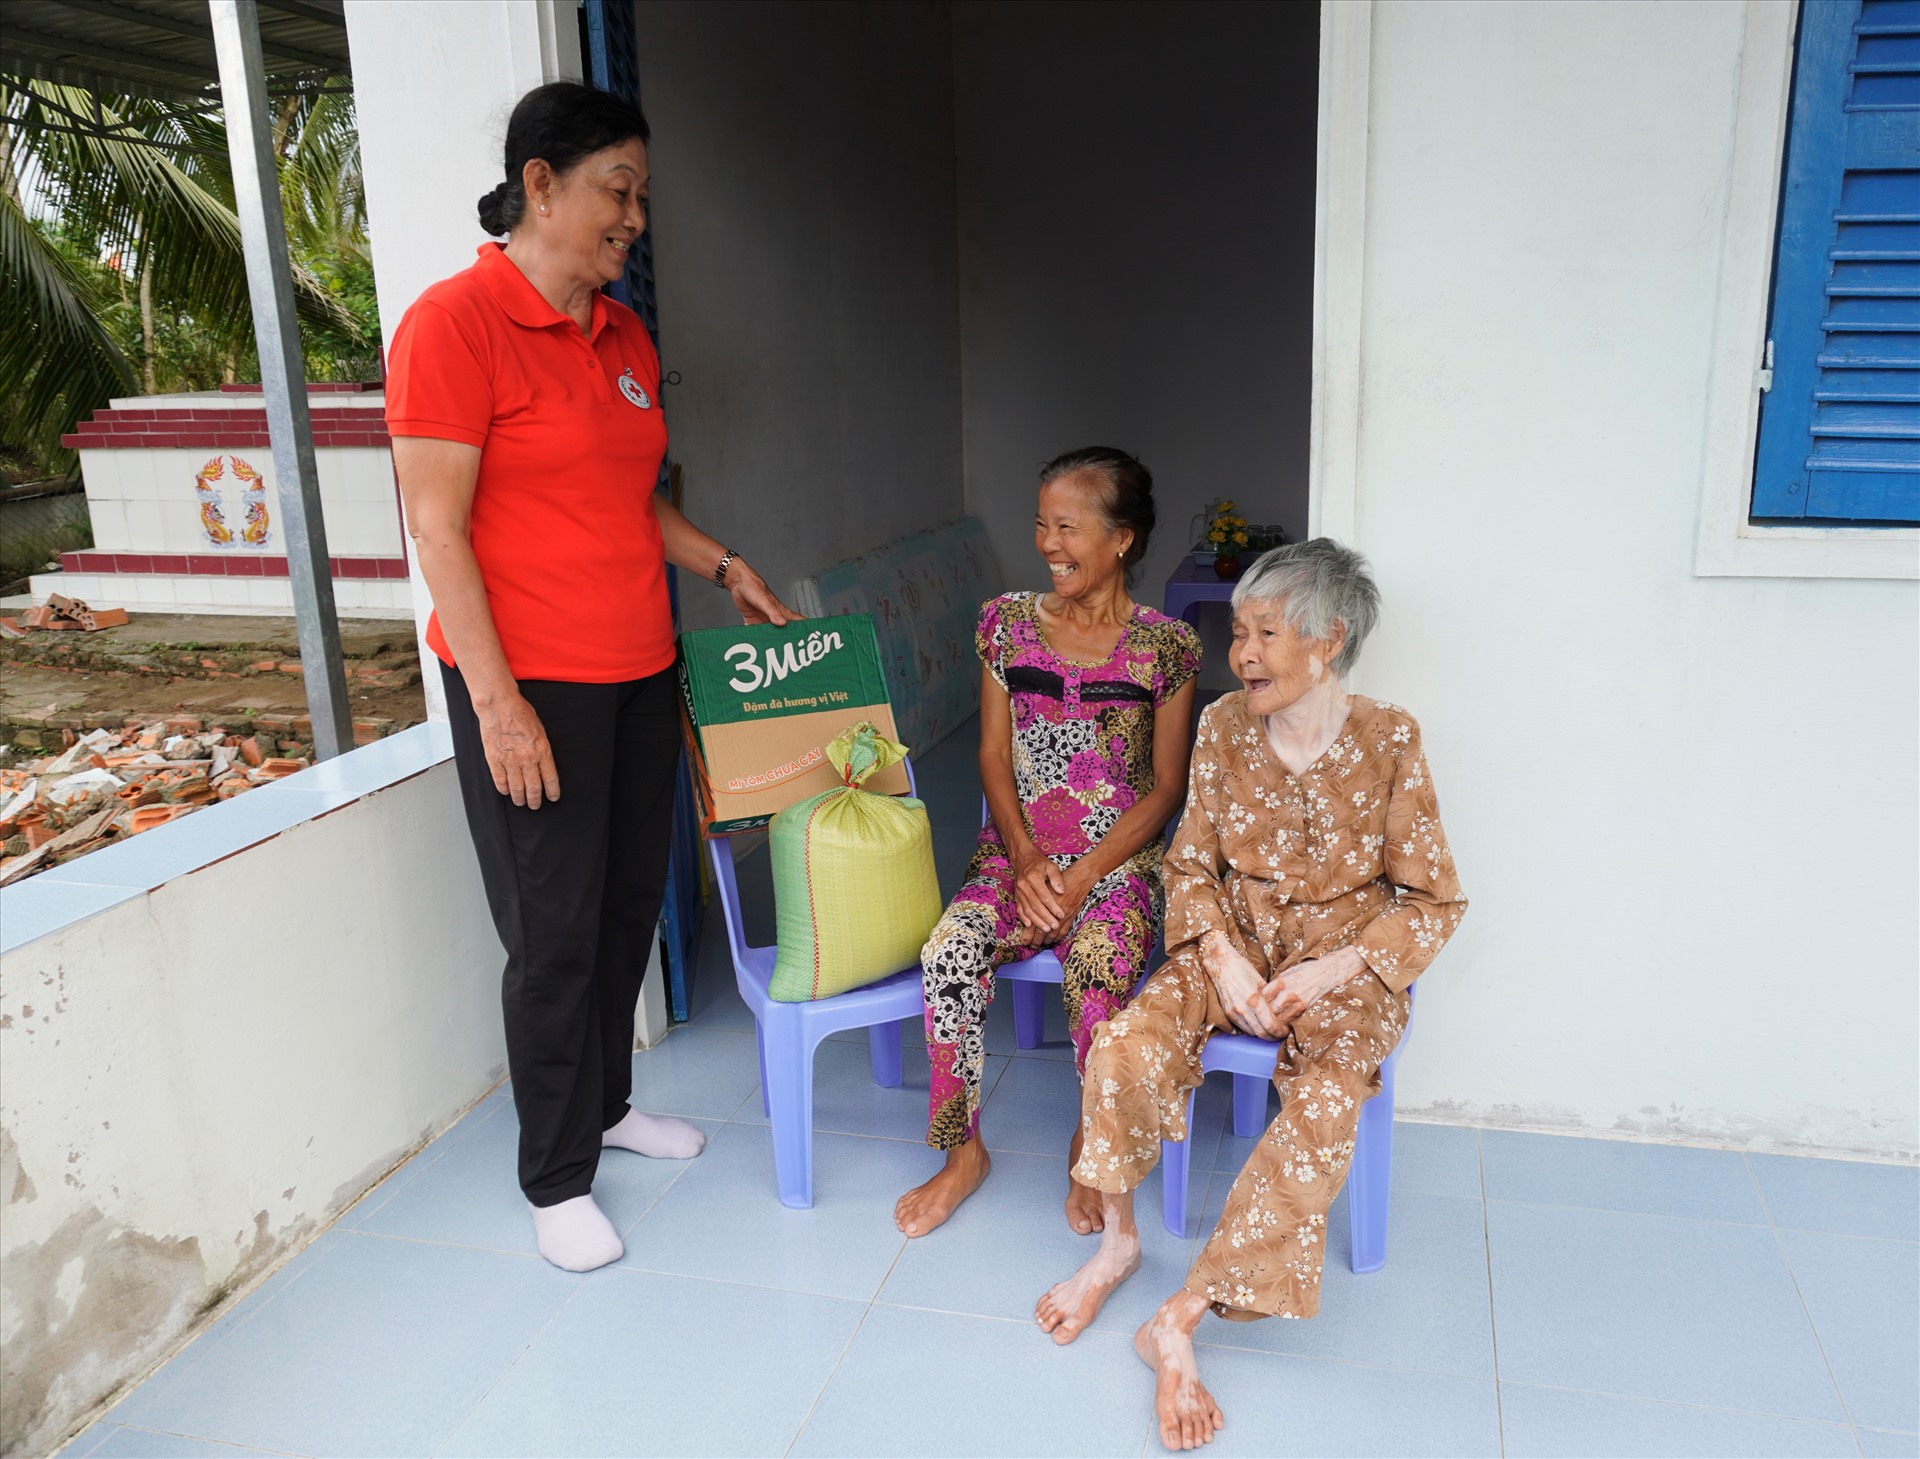 Bà Nguyễn Thị Hạnh (86 tuổi, mẹ), bà Đoàn Thị Thu Ba (54 tuổi, con) nhờ bà Xuân giúp đỡ, vận động cất nhà, cho mỳ và gạo hàng tháng. Ảnh: Nguyên Anh